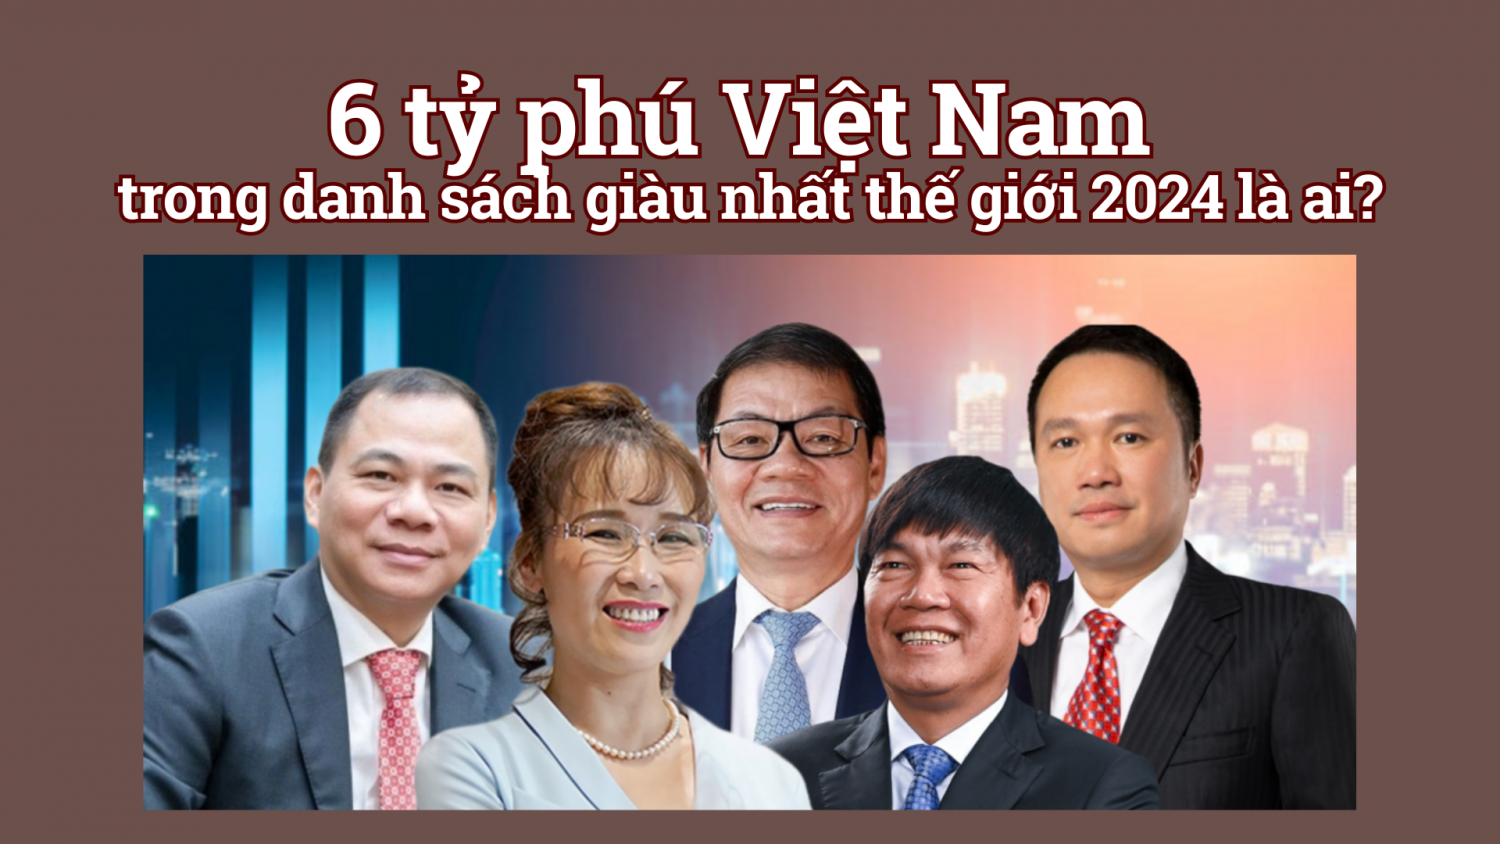 6 tỷ phú Việt Nam trong danh sách giàu nhất thế giới 2024 là ai?